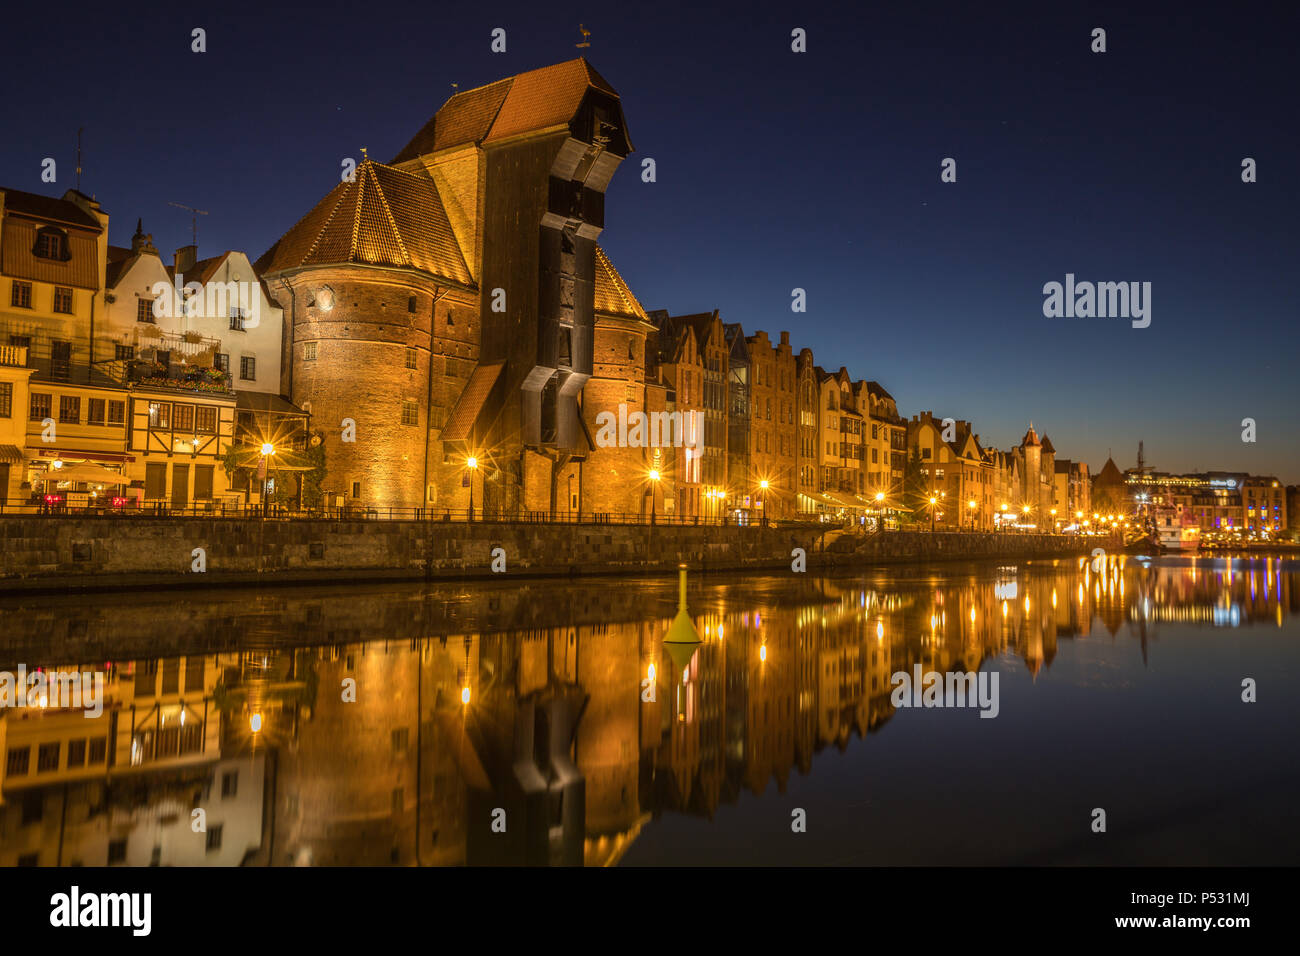 Gdansk city lights Stock Photo